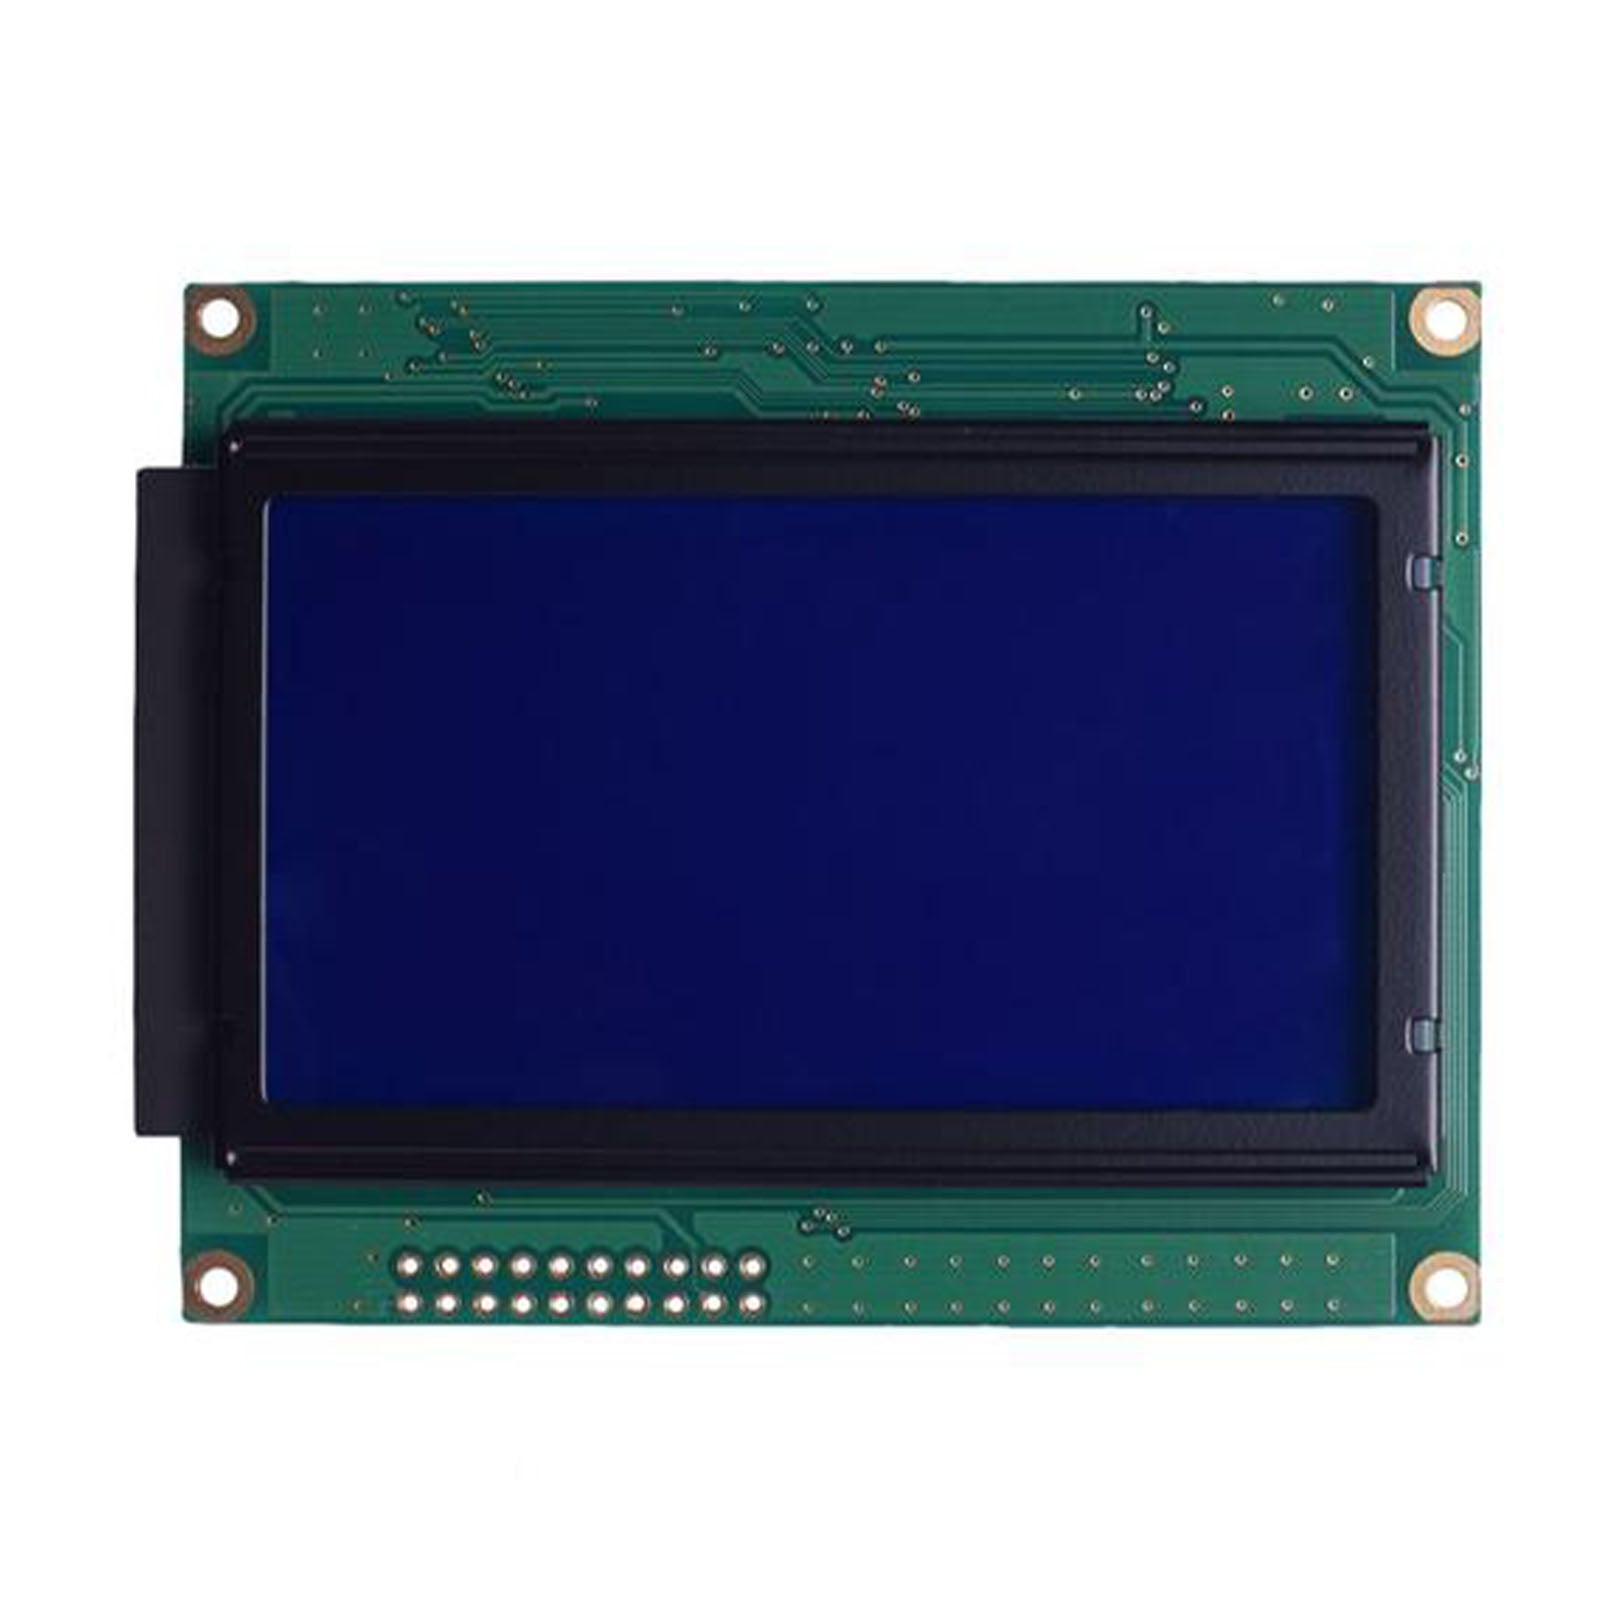 DisplayModule 3.24" 128x64 Yellow Green Blue Graphic LCD - MCU